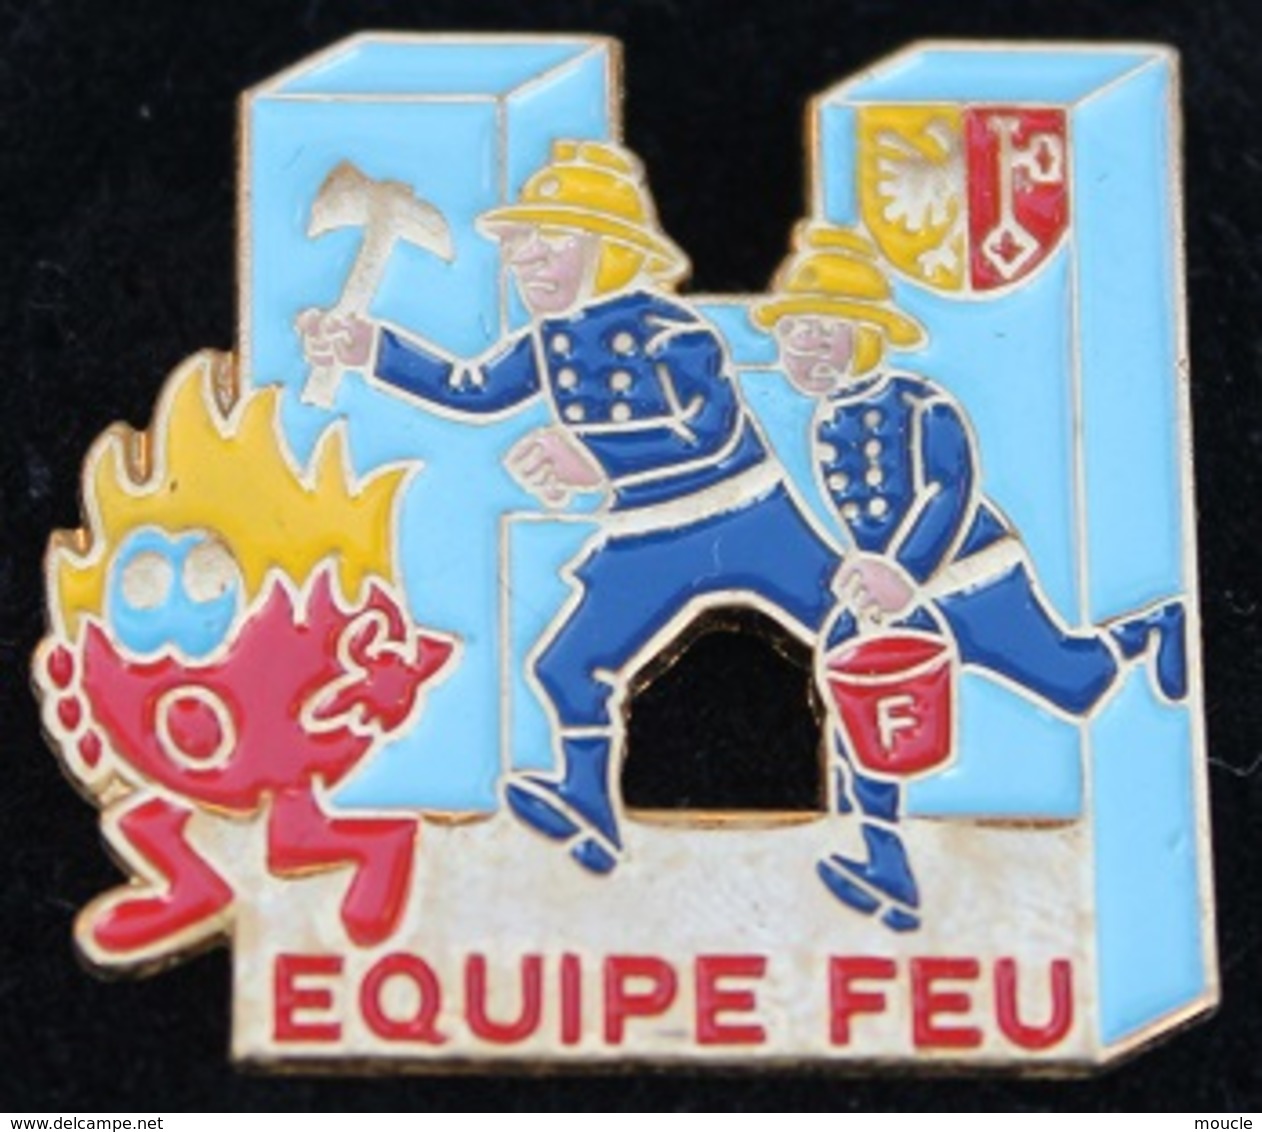 SAPEURS POMPIERS DES HUG - HÔPITAL UNIVERSITAIRE DE GENEVE - EQUIPE FEU - SUISSE -      (21) - Firemen